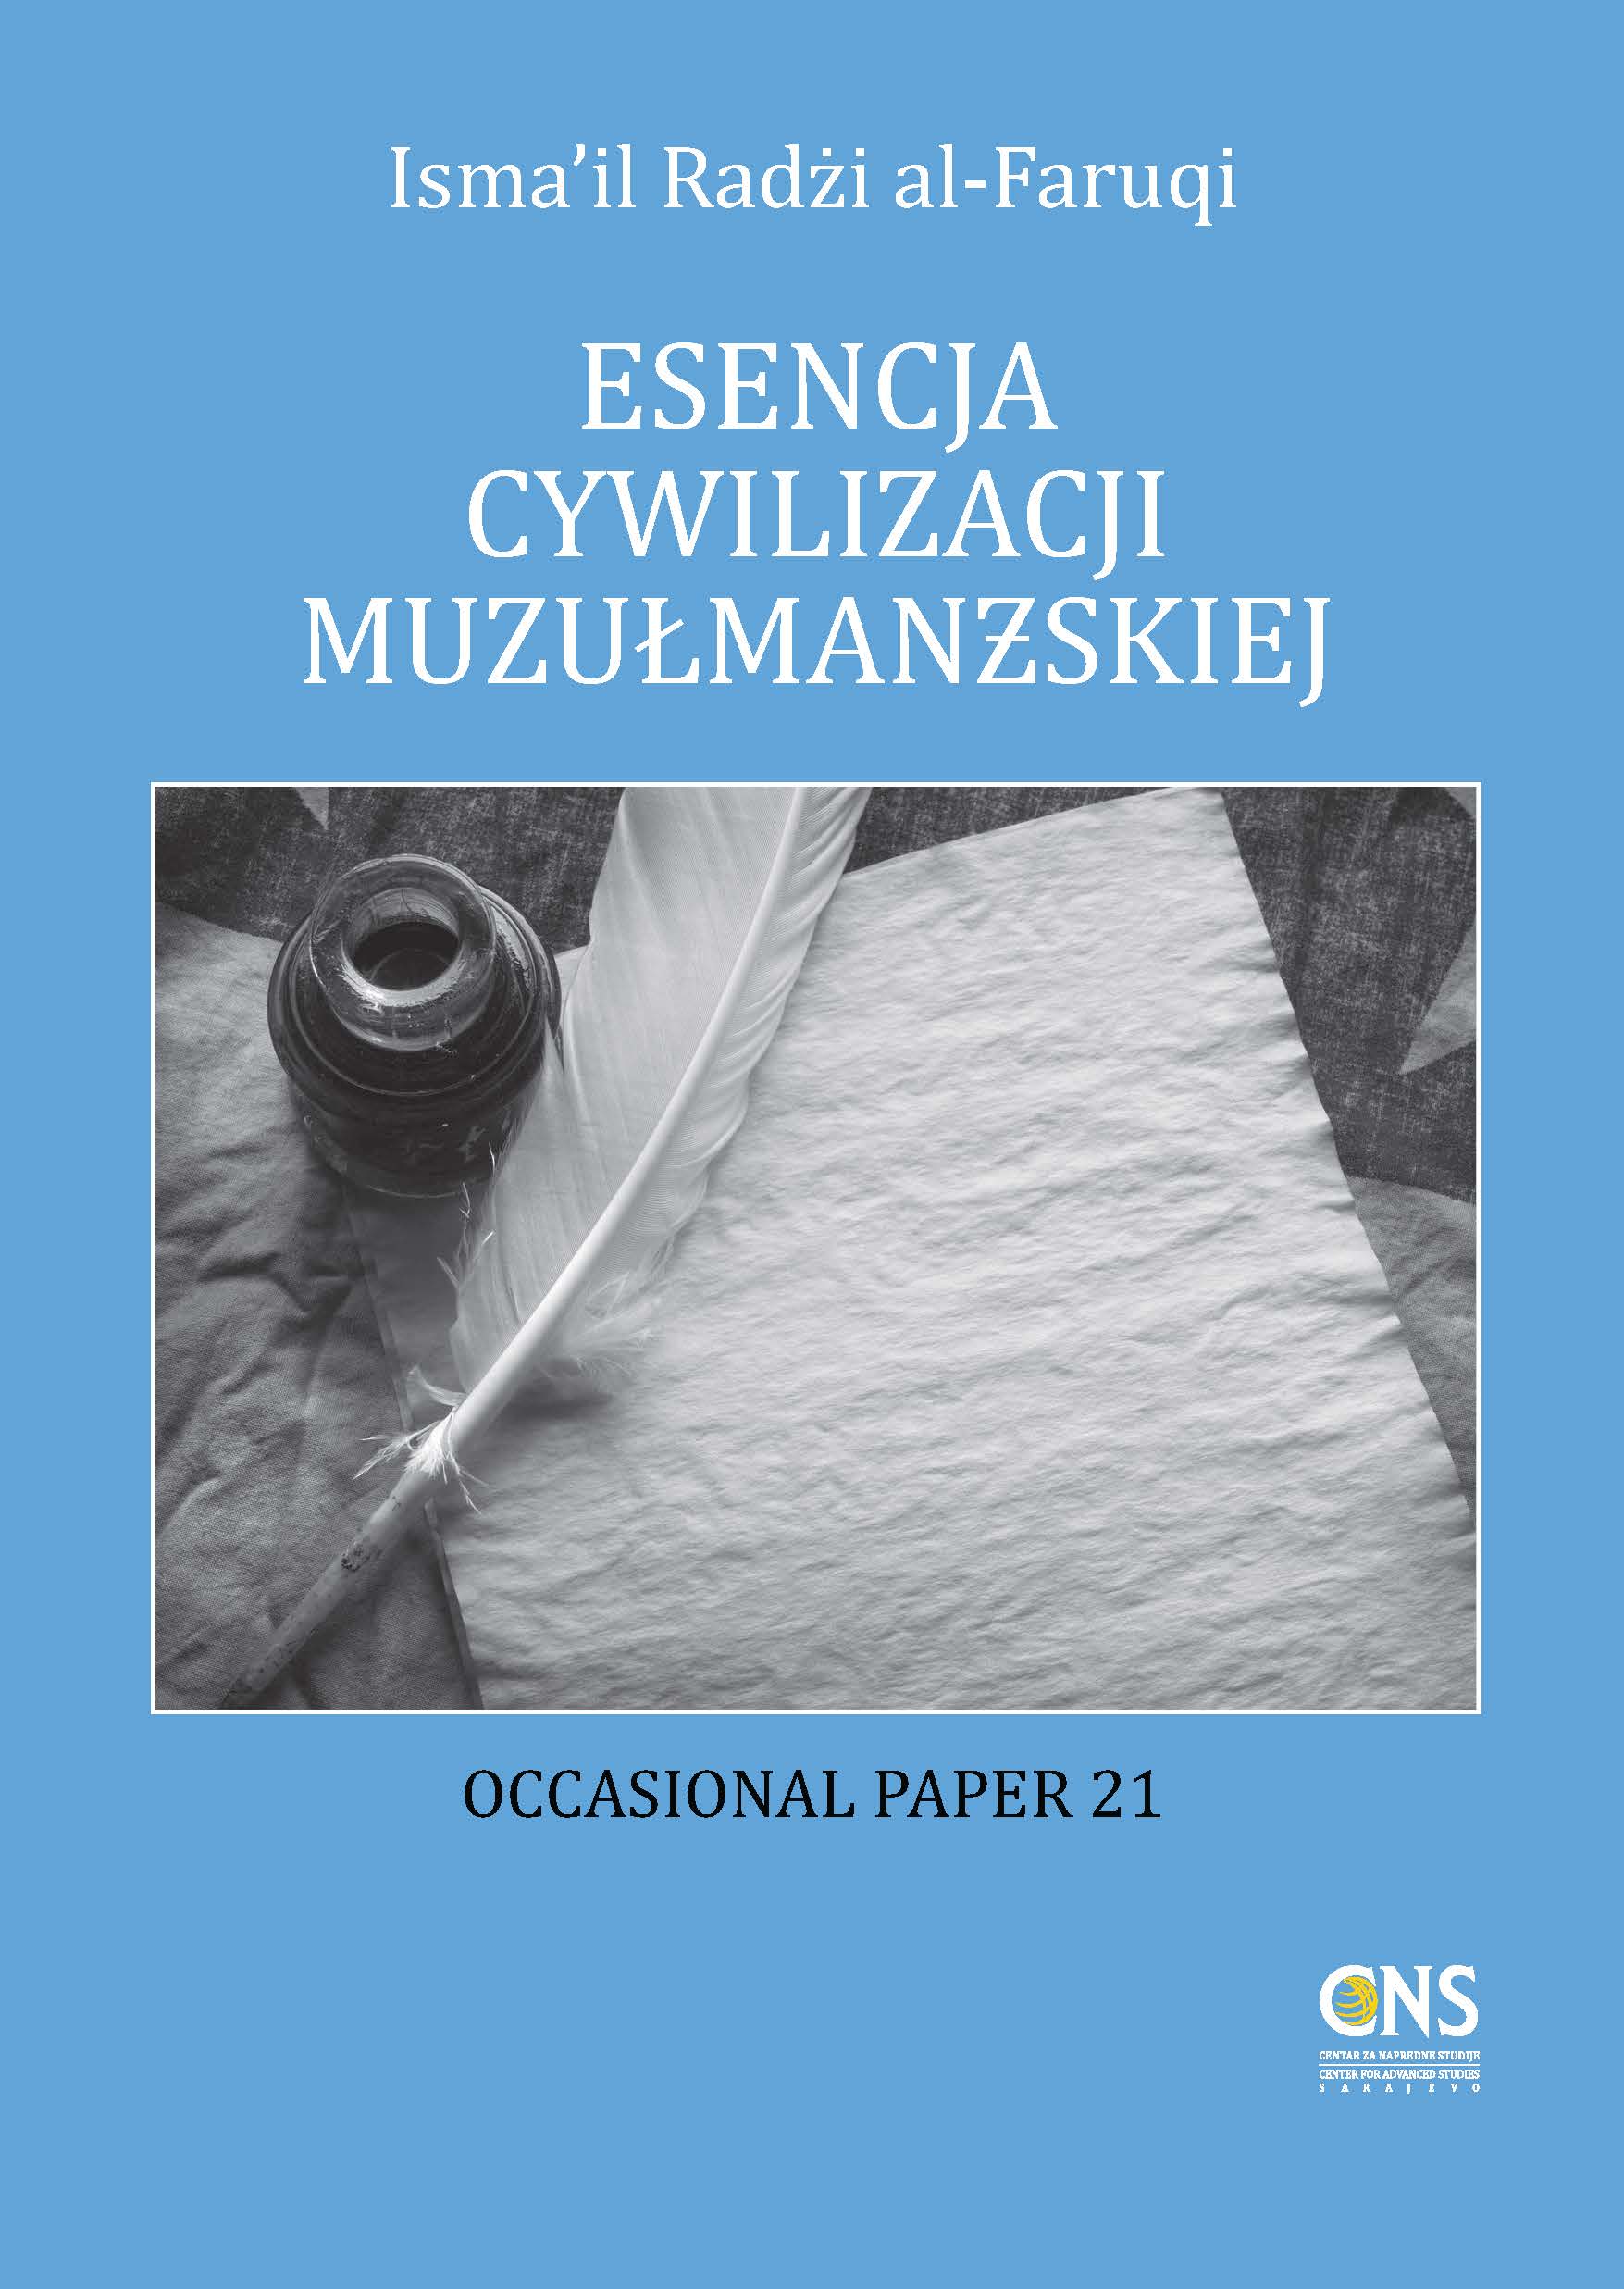 Polish: Esencja cywilizacji muzułmańskiej (The Essence of Islamic Civilization – Occasional Paper)